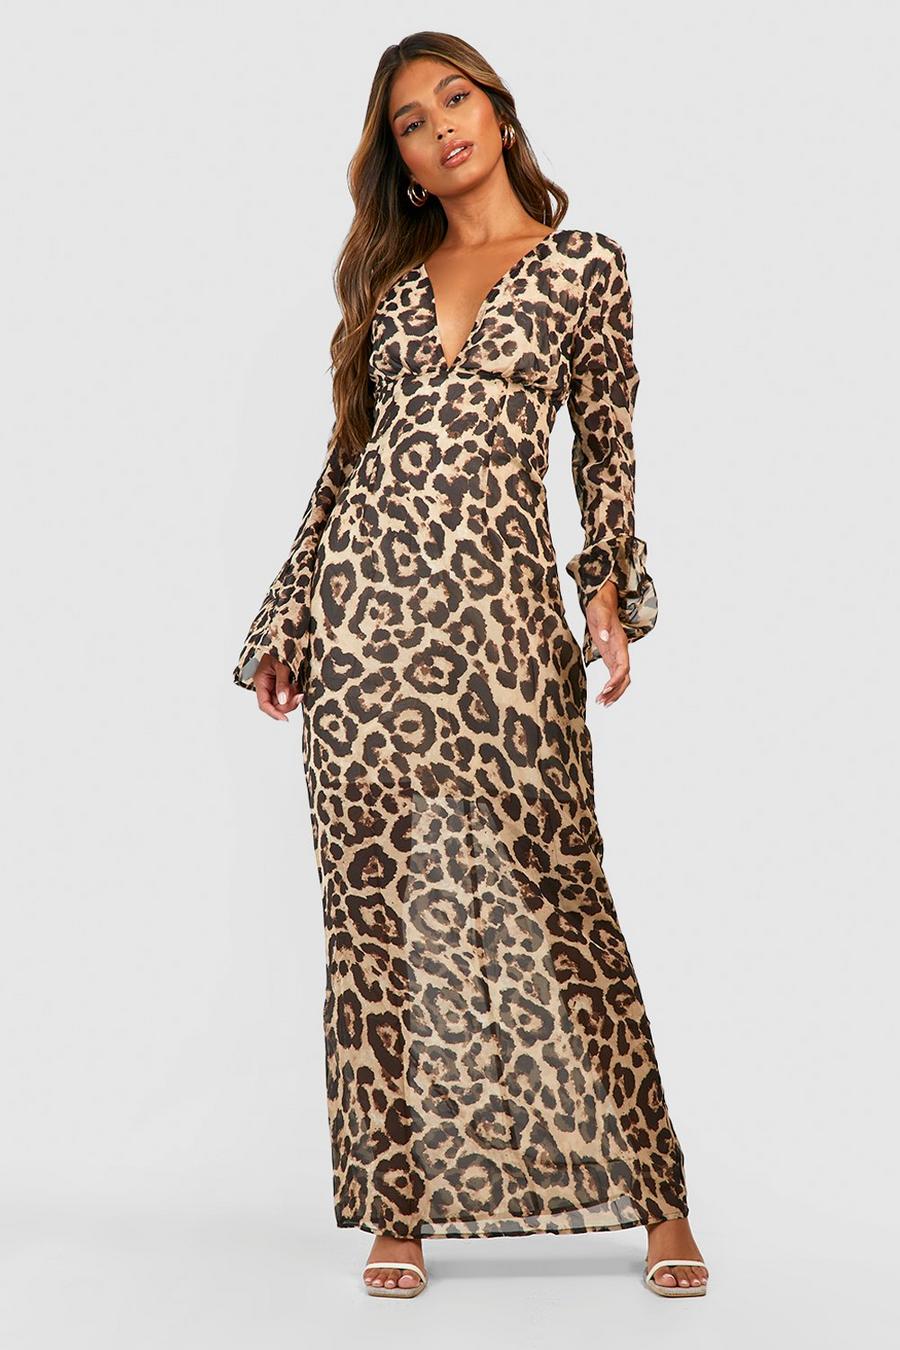 Brown Leopard Print Chiffon Maxi Dress 